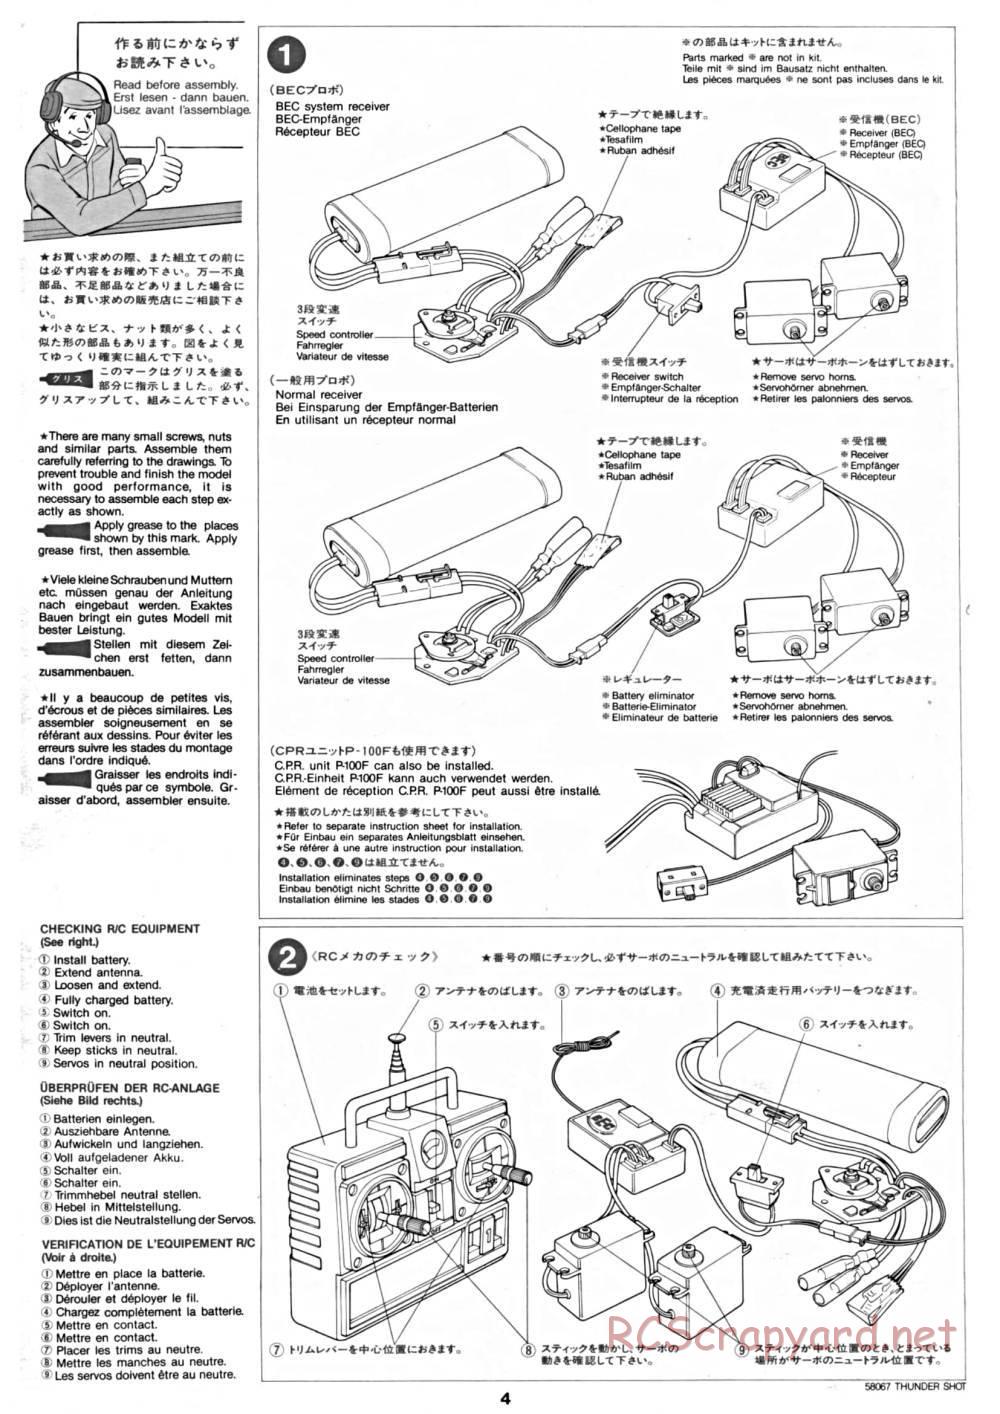 Tamiya - Thunder Shot - 58067 - Manual - Page 4